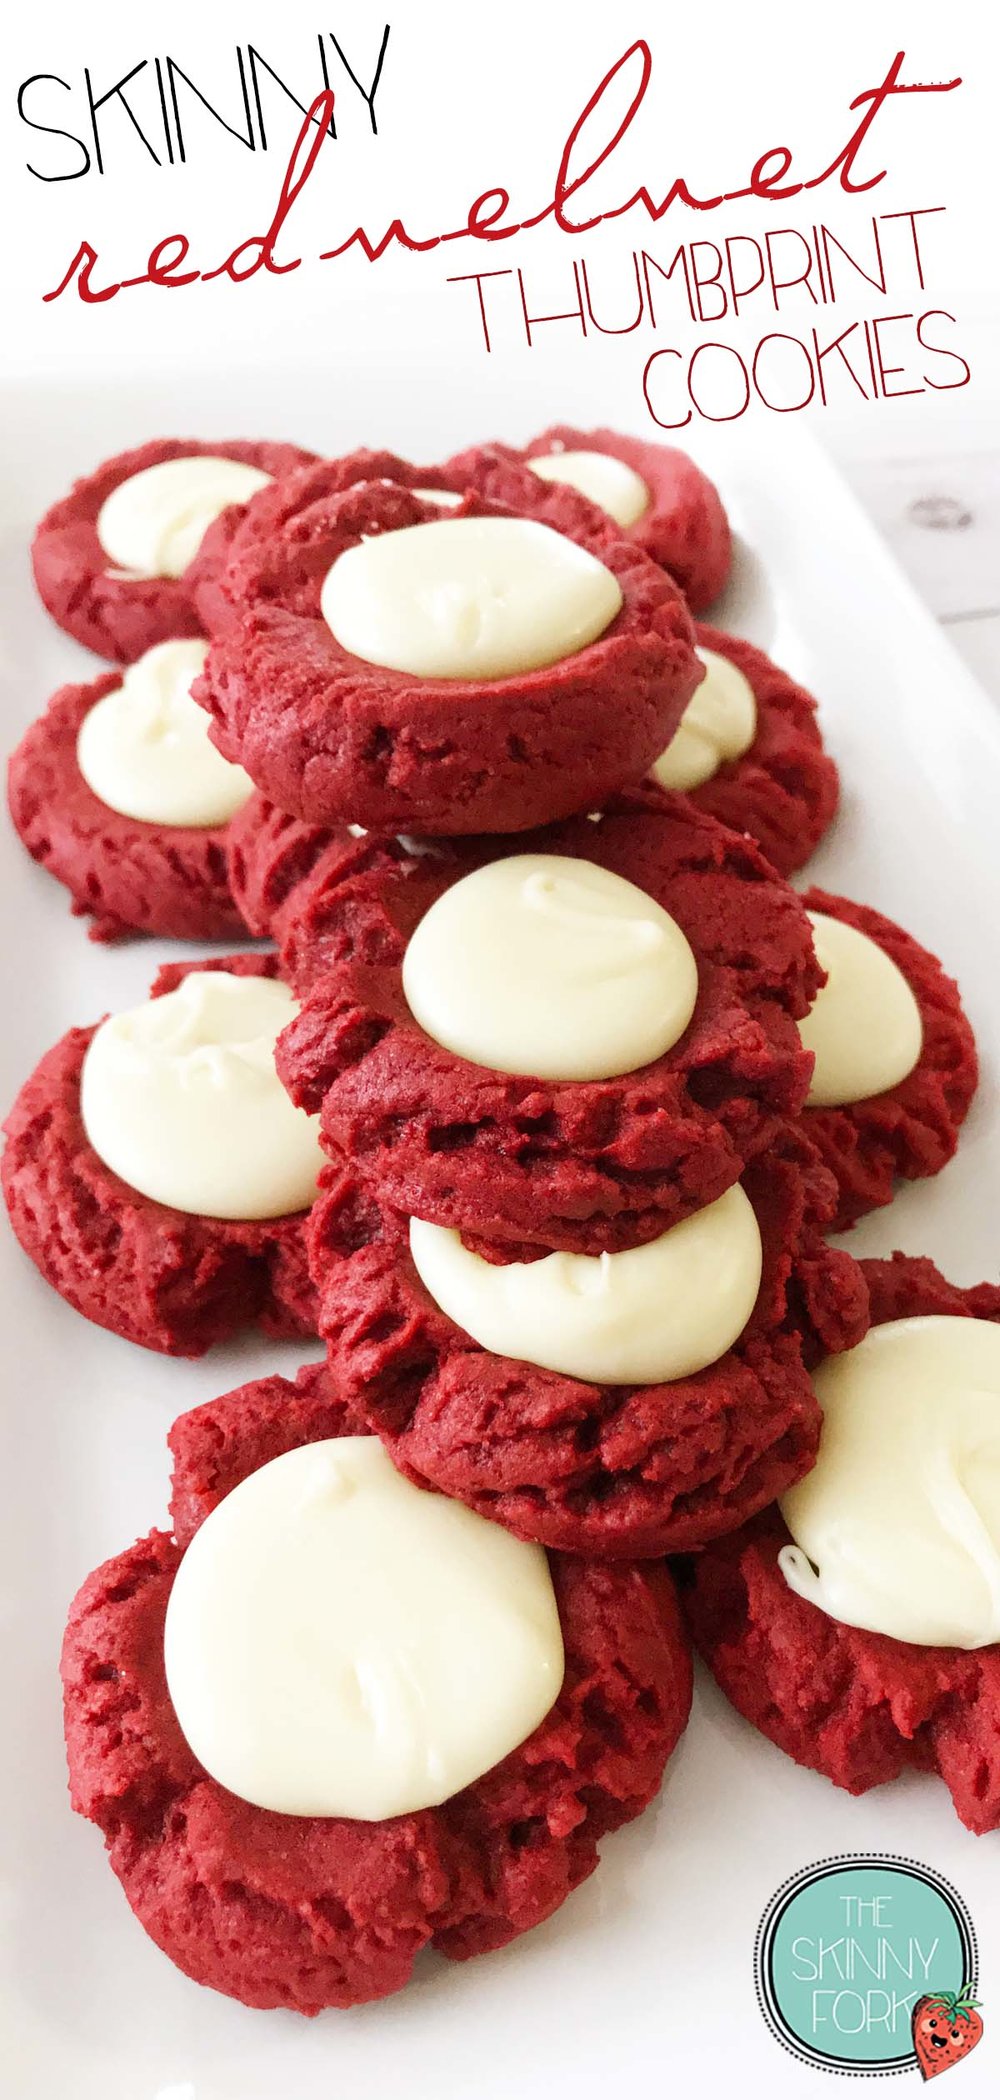 red-velvet-thumbprint-cookies-pin.jpg